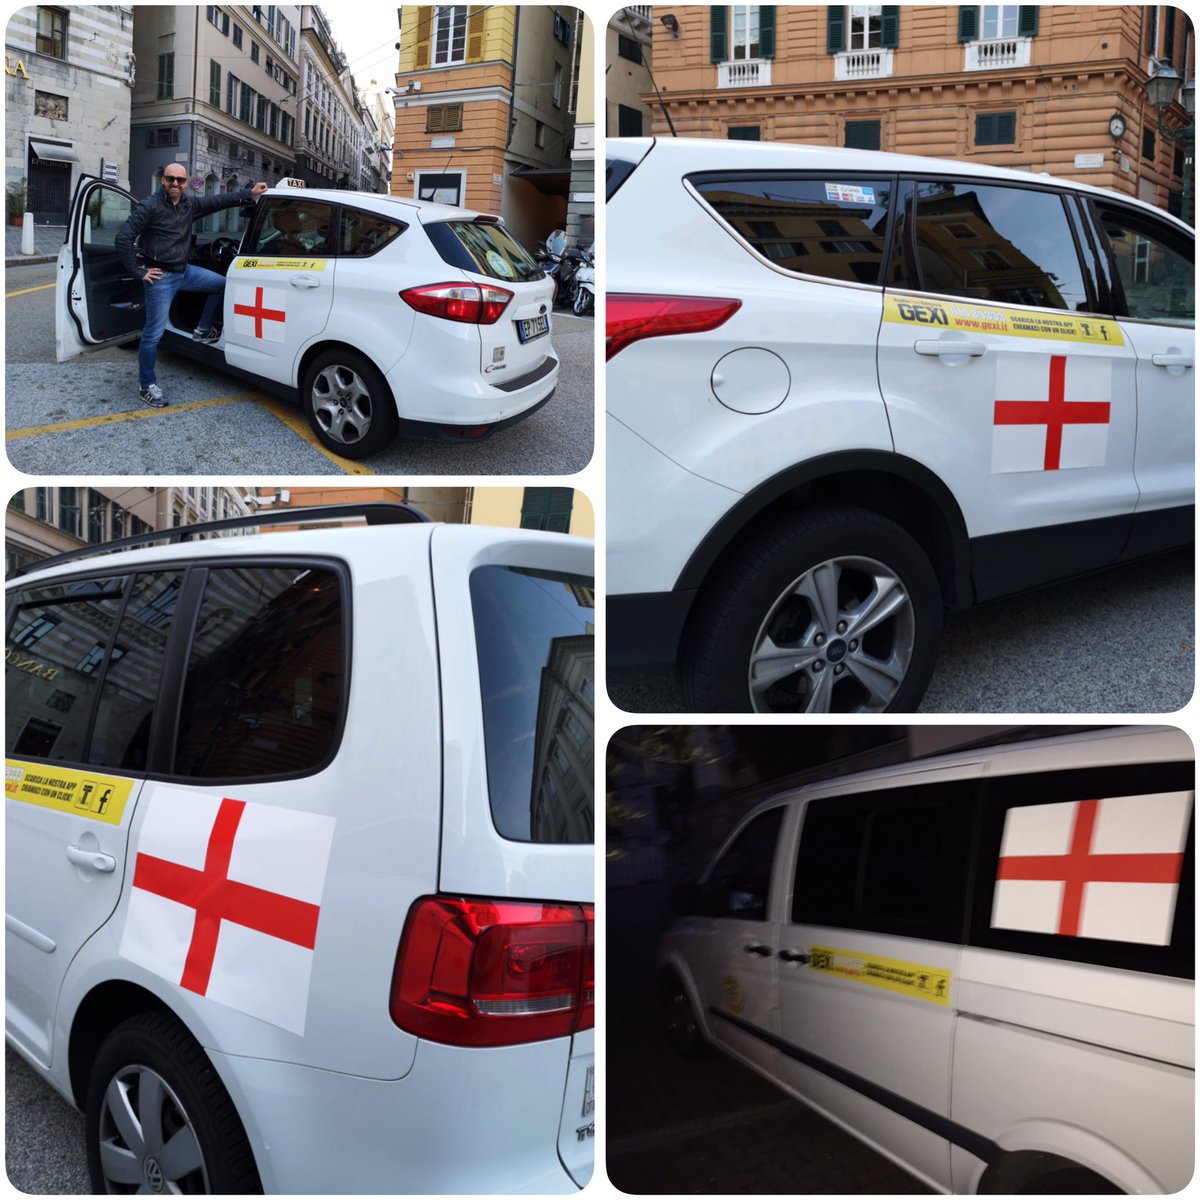 I #taxi di #GEXI partecipano alla #festadellabandiera di #Genova 🏴󠁧󠁢󠁥󠁮󠁧󠁿

Con orgoglio e passione!
Innamorati della nostra città ❤️

#23aprile #sangiorgio #genovameravigliosa #genovamorethanthis #love #lapassioneciguida #serviziopubblico